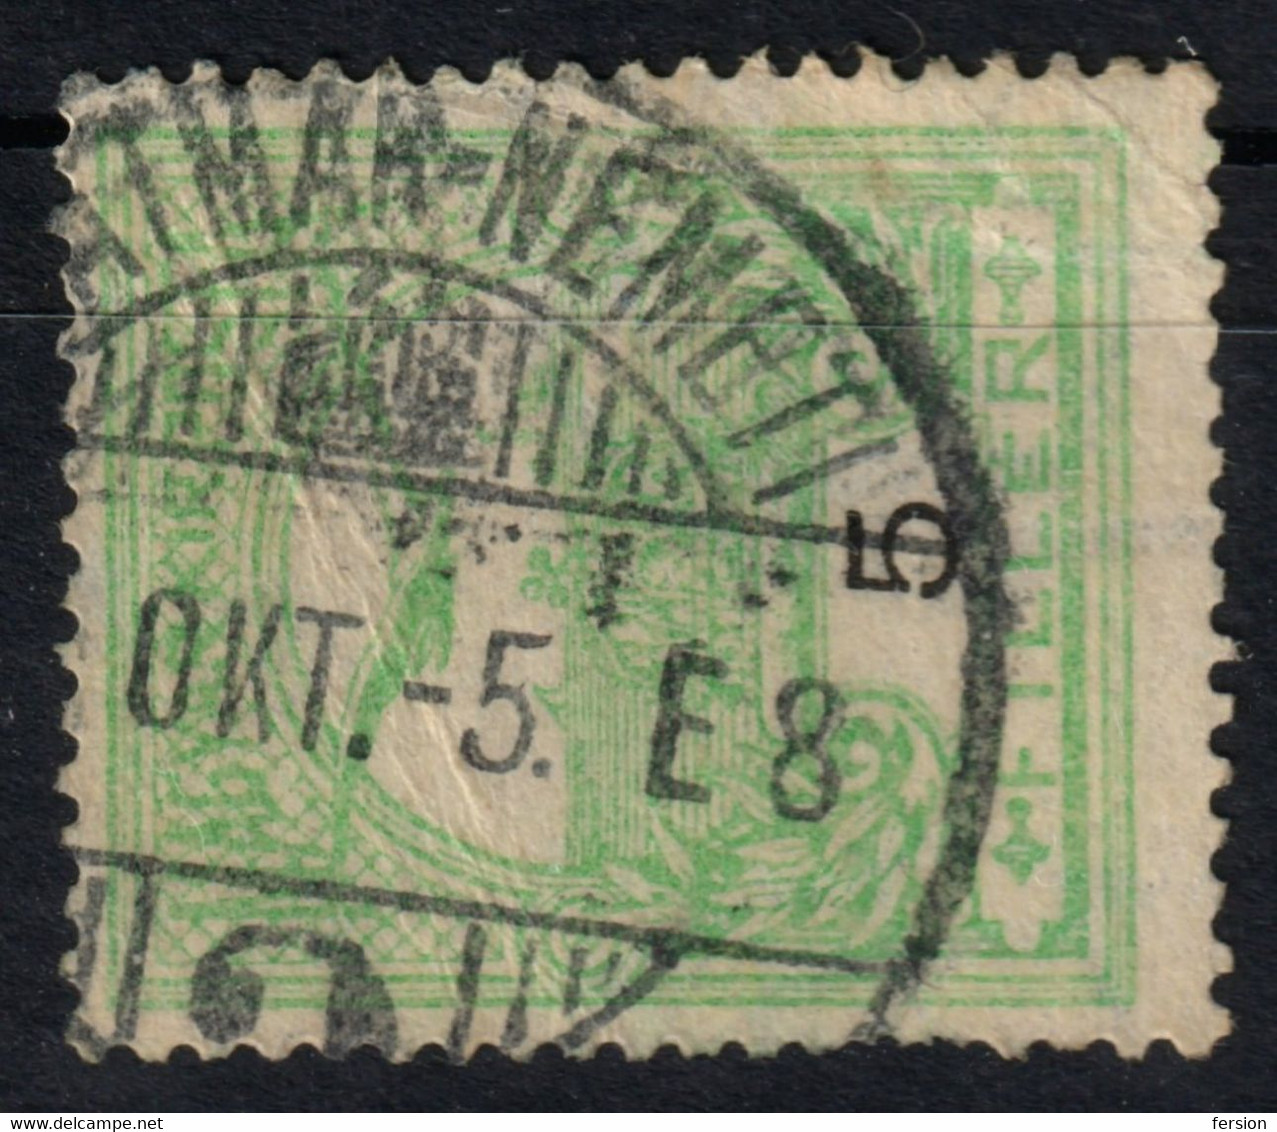 Satu Mare Szatmárnémeti Postmark / TURUL Crown 1910's Hungary Romania Transylvania Szatmár County KuK - 5 Fill - Siebenbürgen (Transsylvanien)